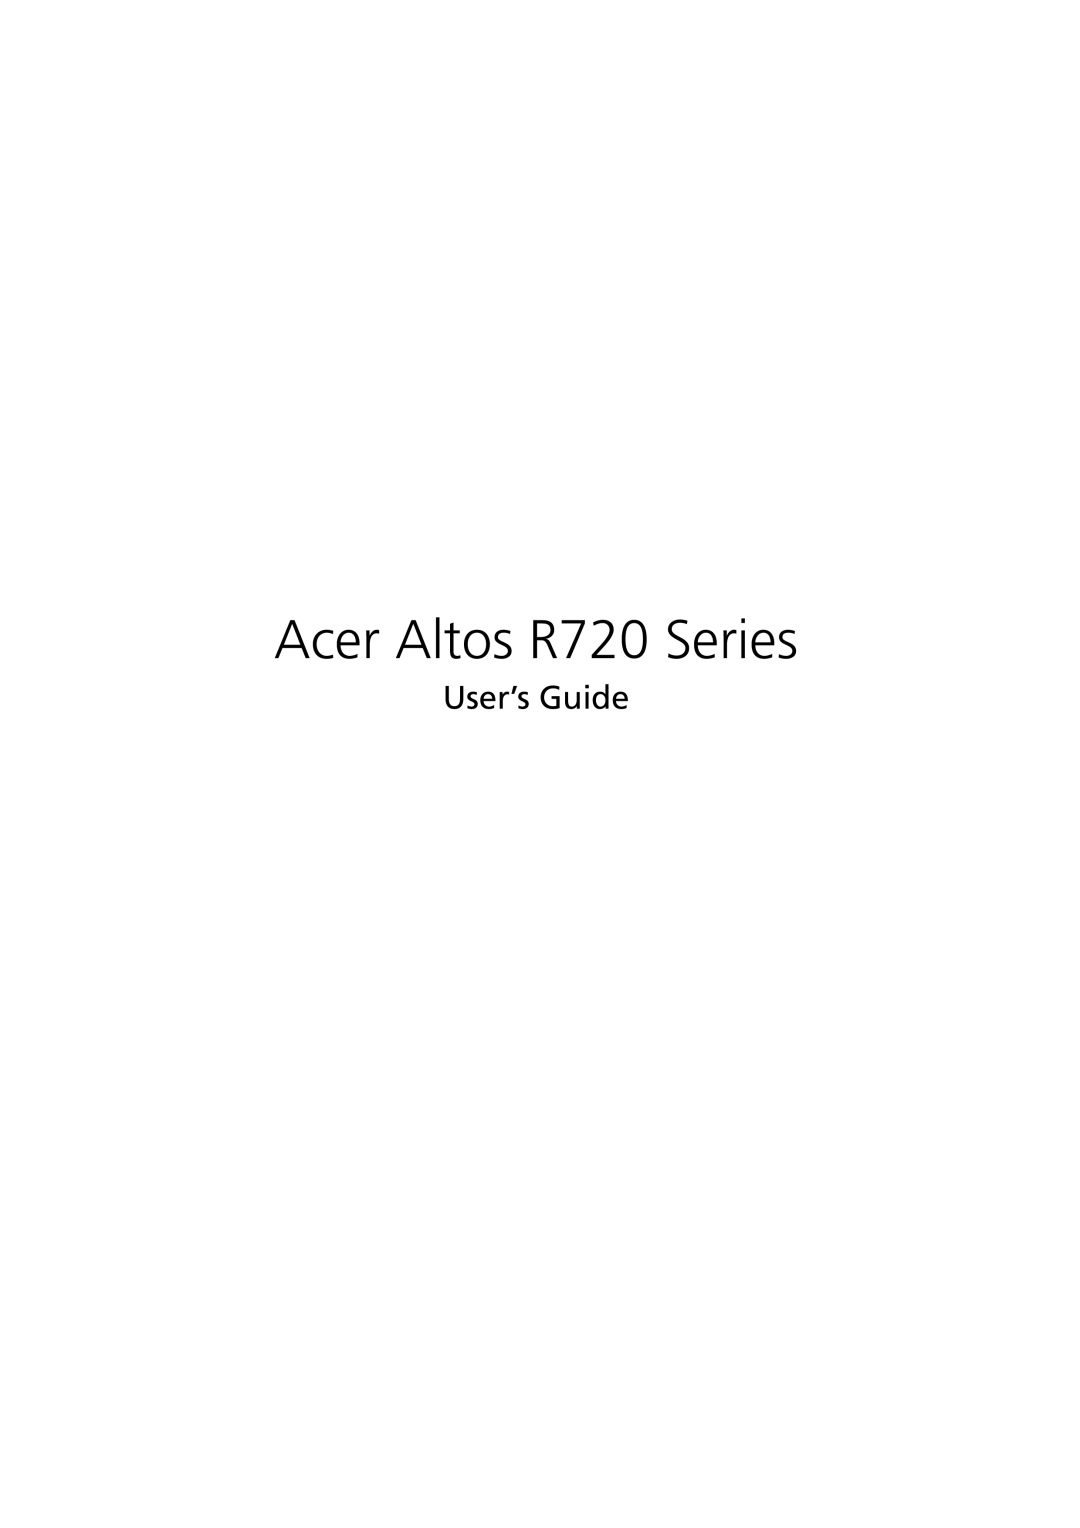 Acer manual Acer Altos R720 Series, User’s Guide 